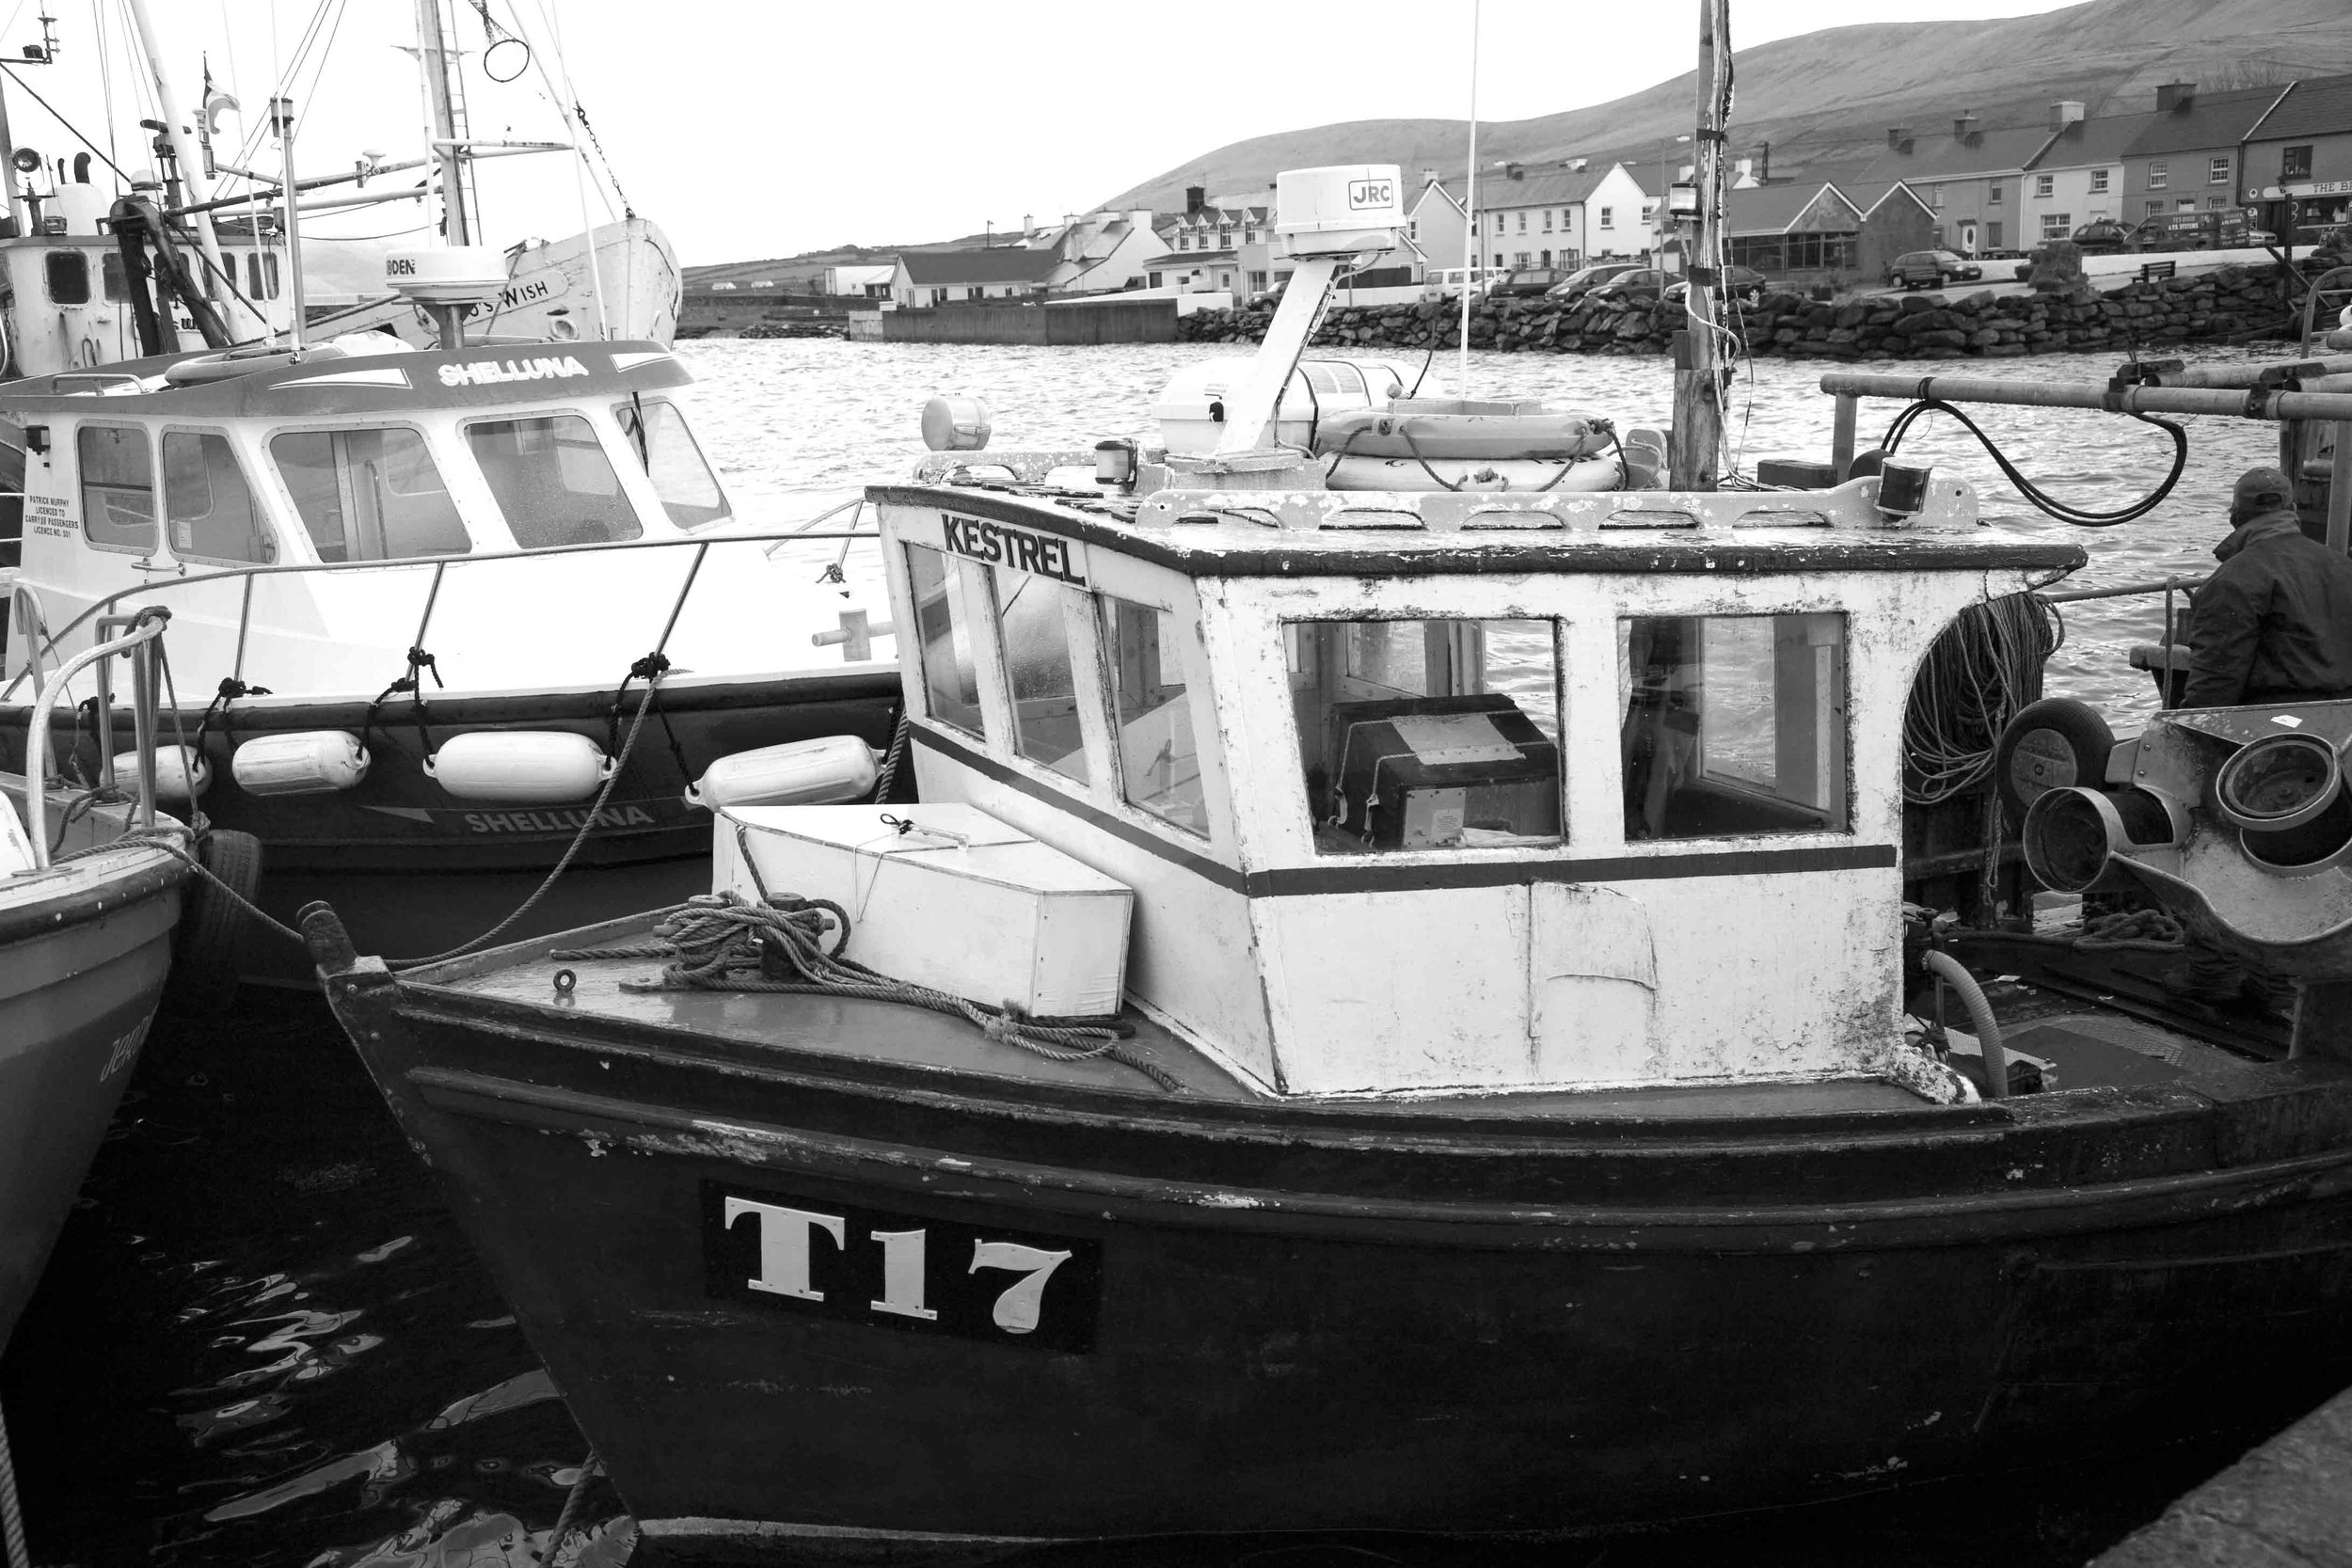 T17 Small Fishing Boat B&W.jpg